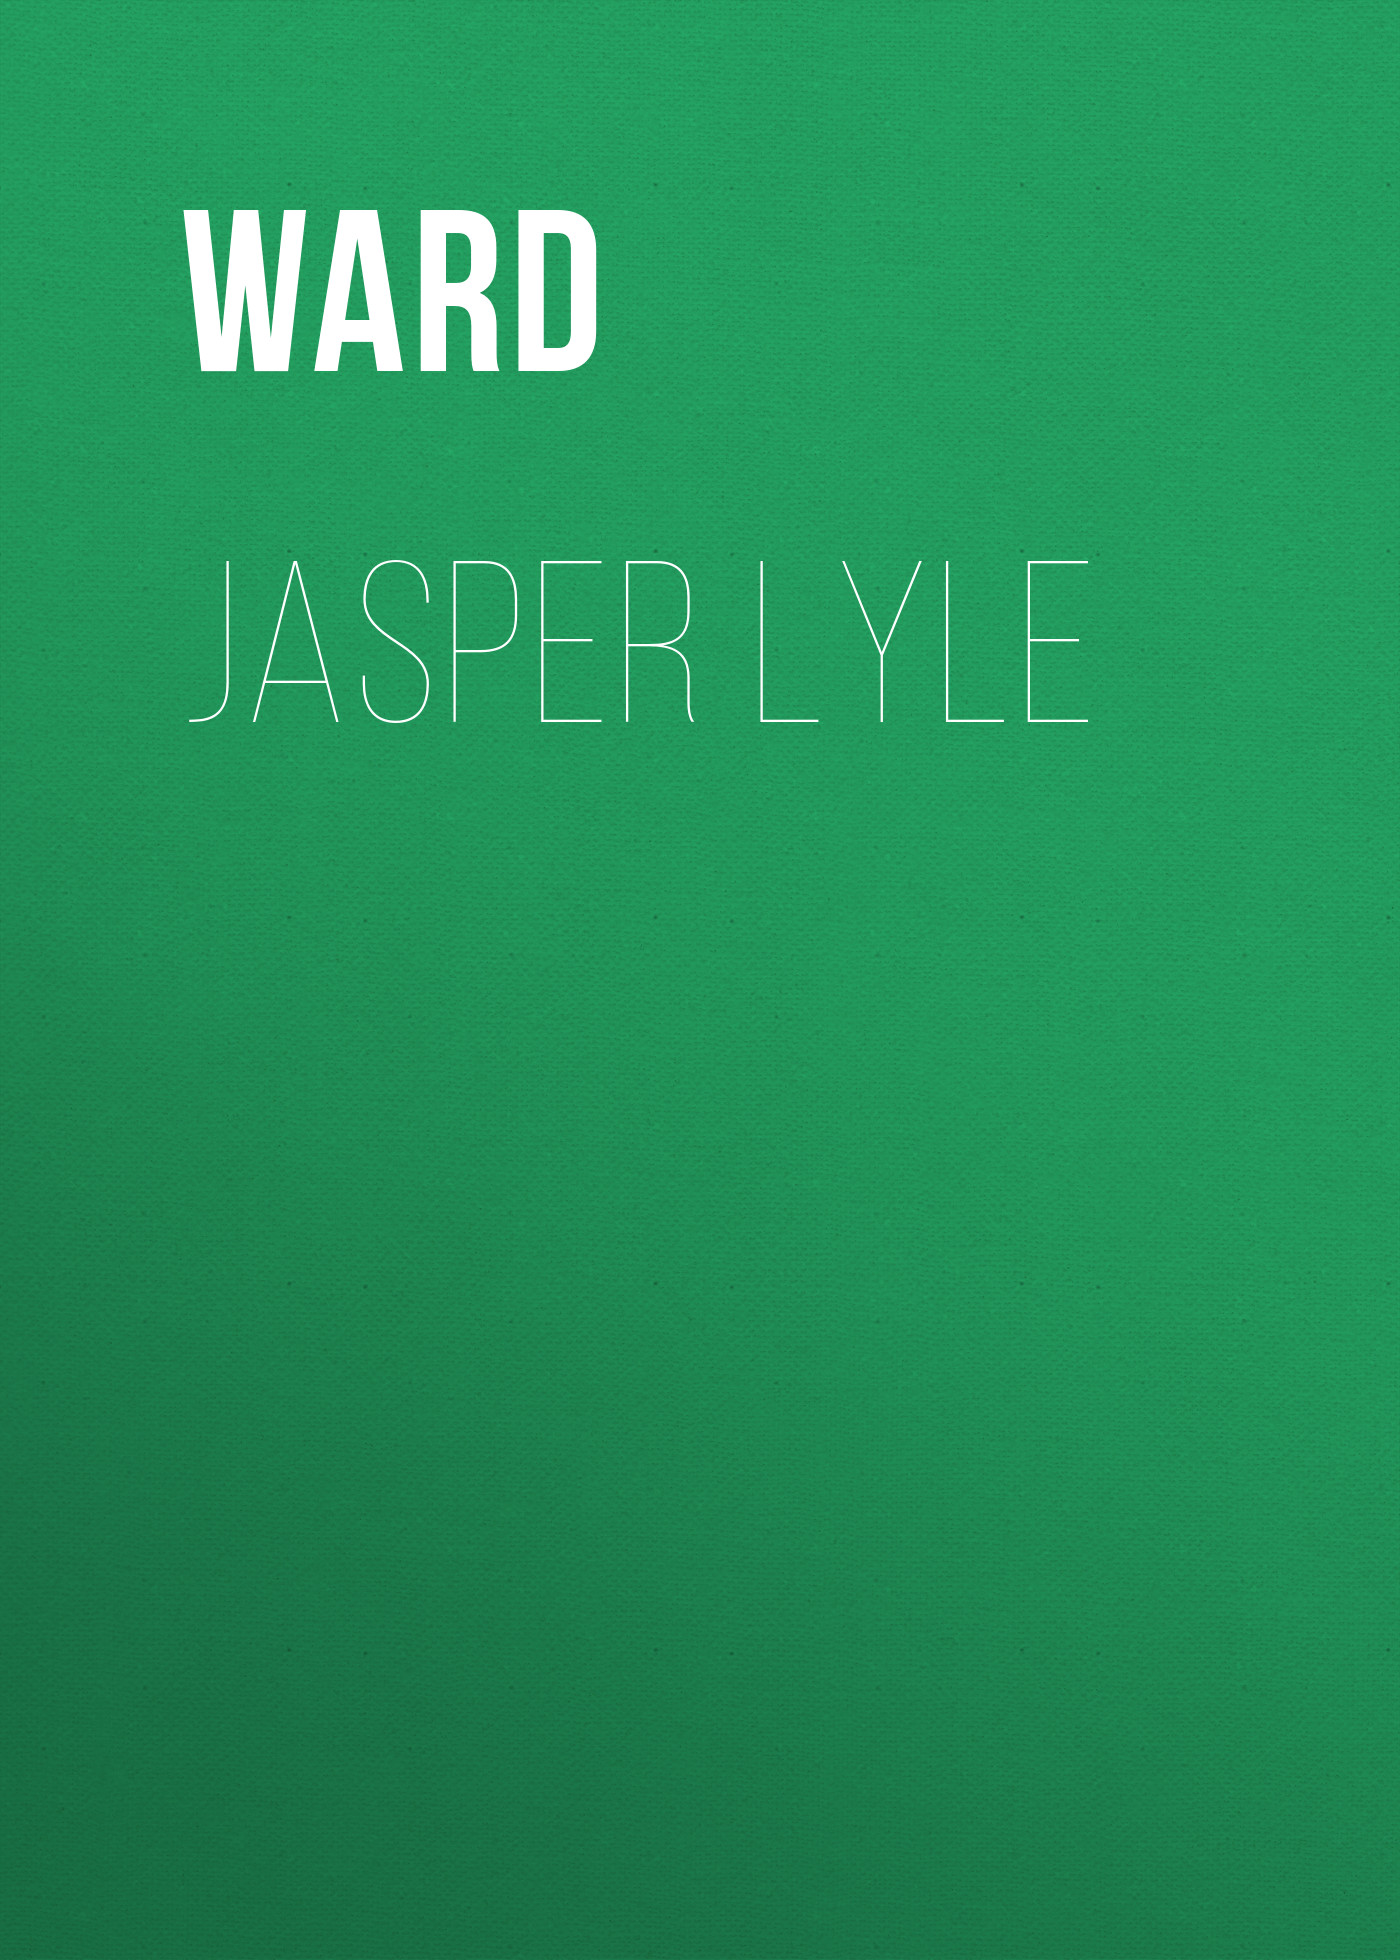 Книга Jasper Lyle из серии , созданная  Ward, может относится к жанру Зарубежная классика, Зарубежная старинная литература. Стоимость электронной книги Jasper Lyle с идентификатором 34337226 составляет 0 руб.